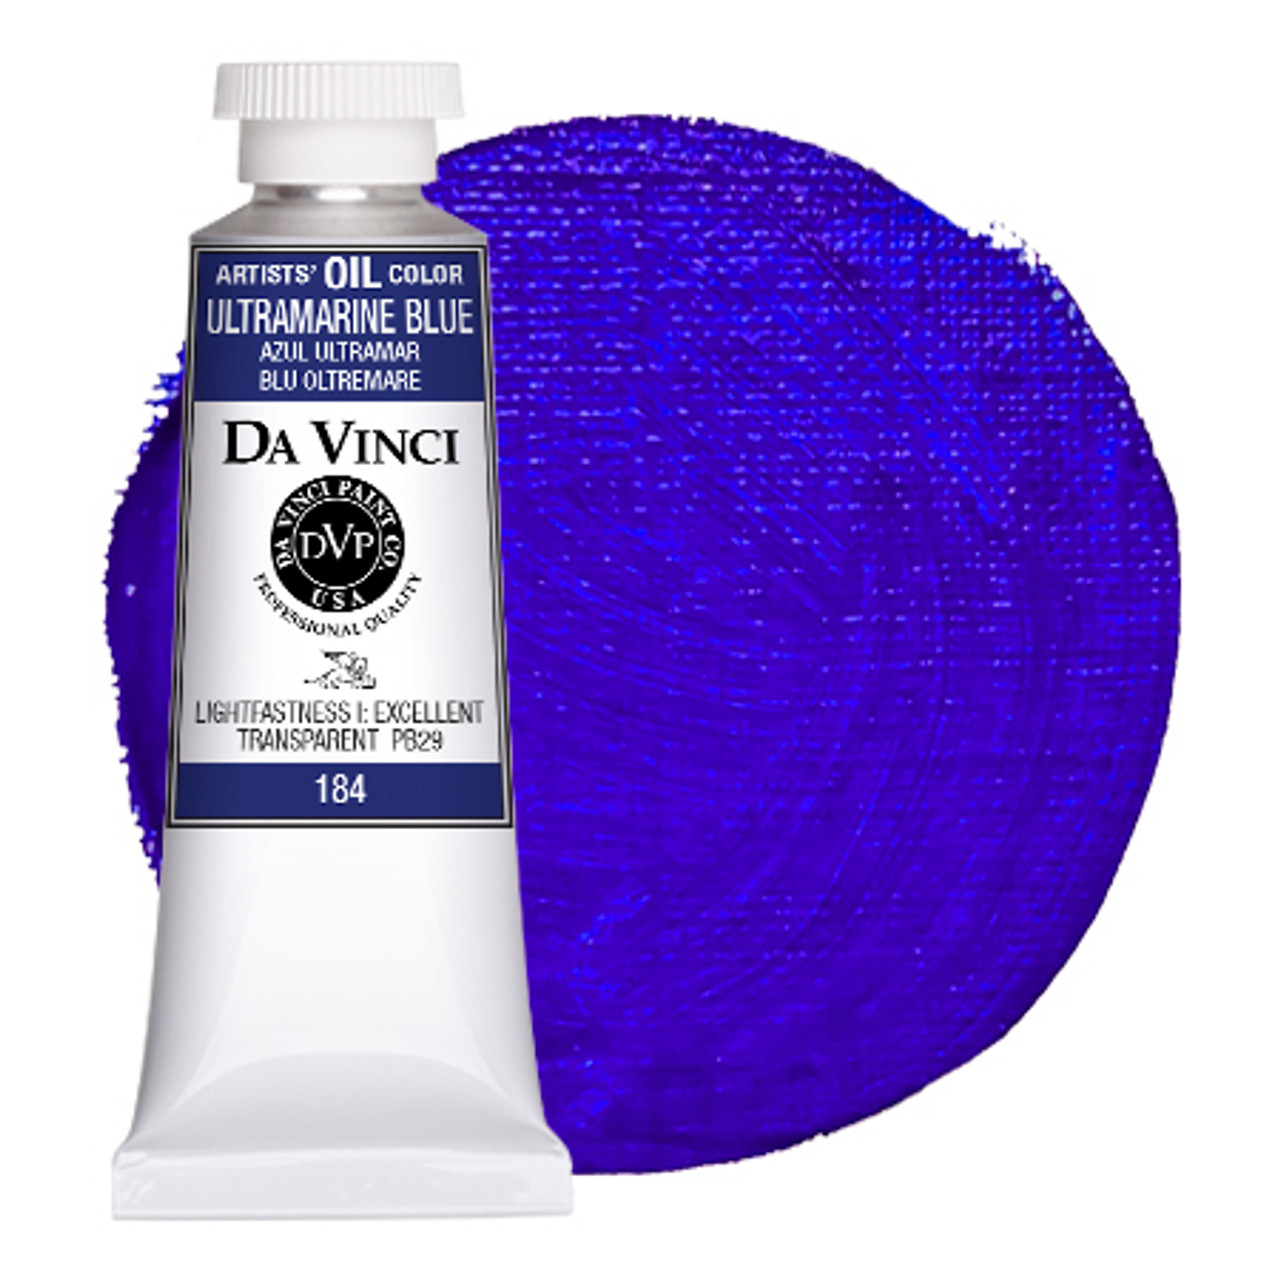 Da Vinci Ultramarine Blue Artist Oil Paint - 37mL